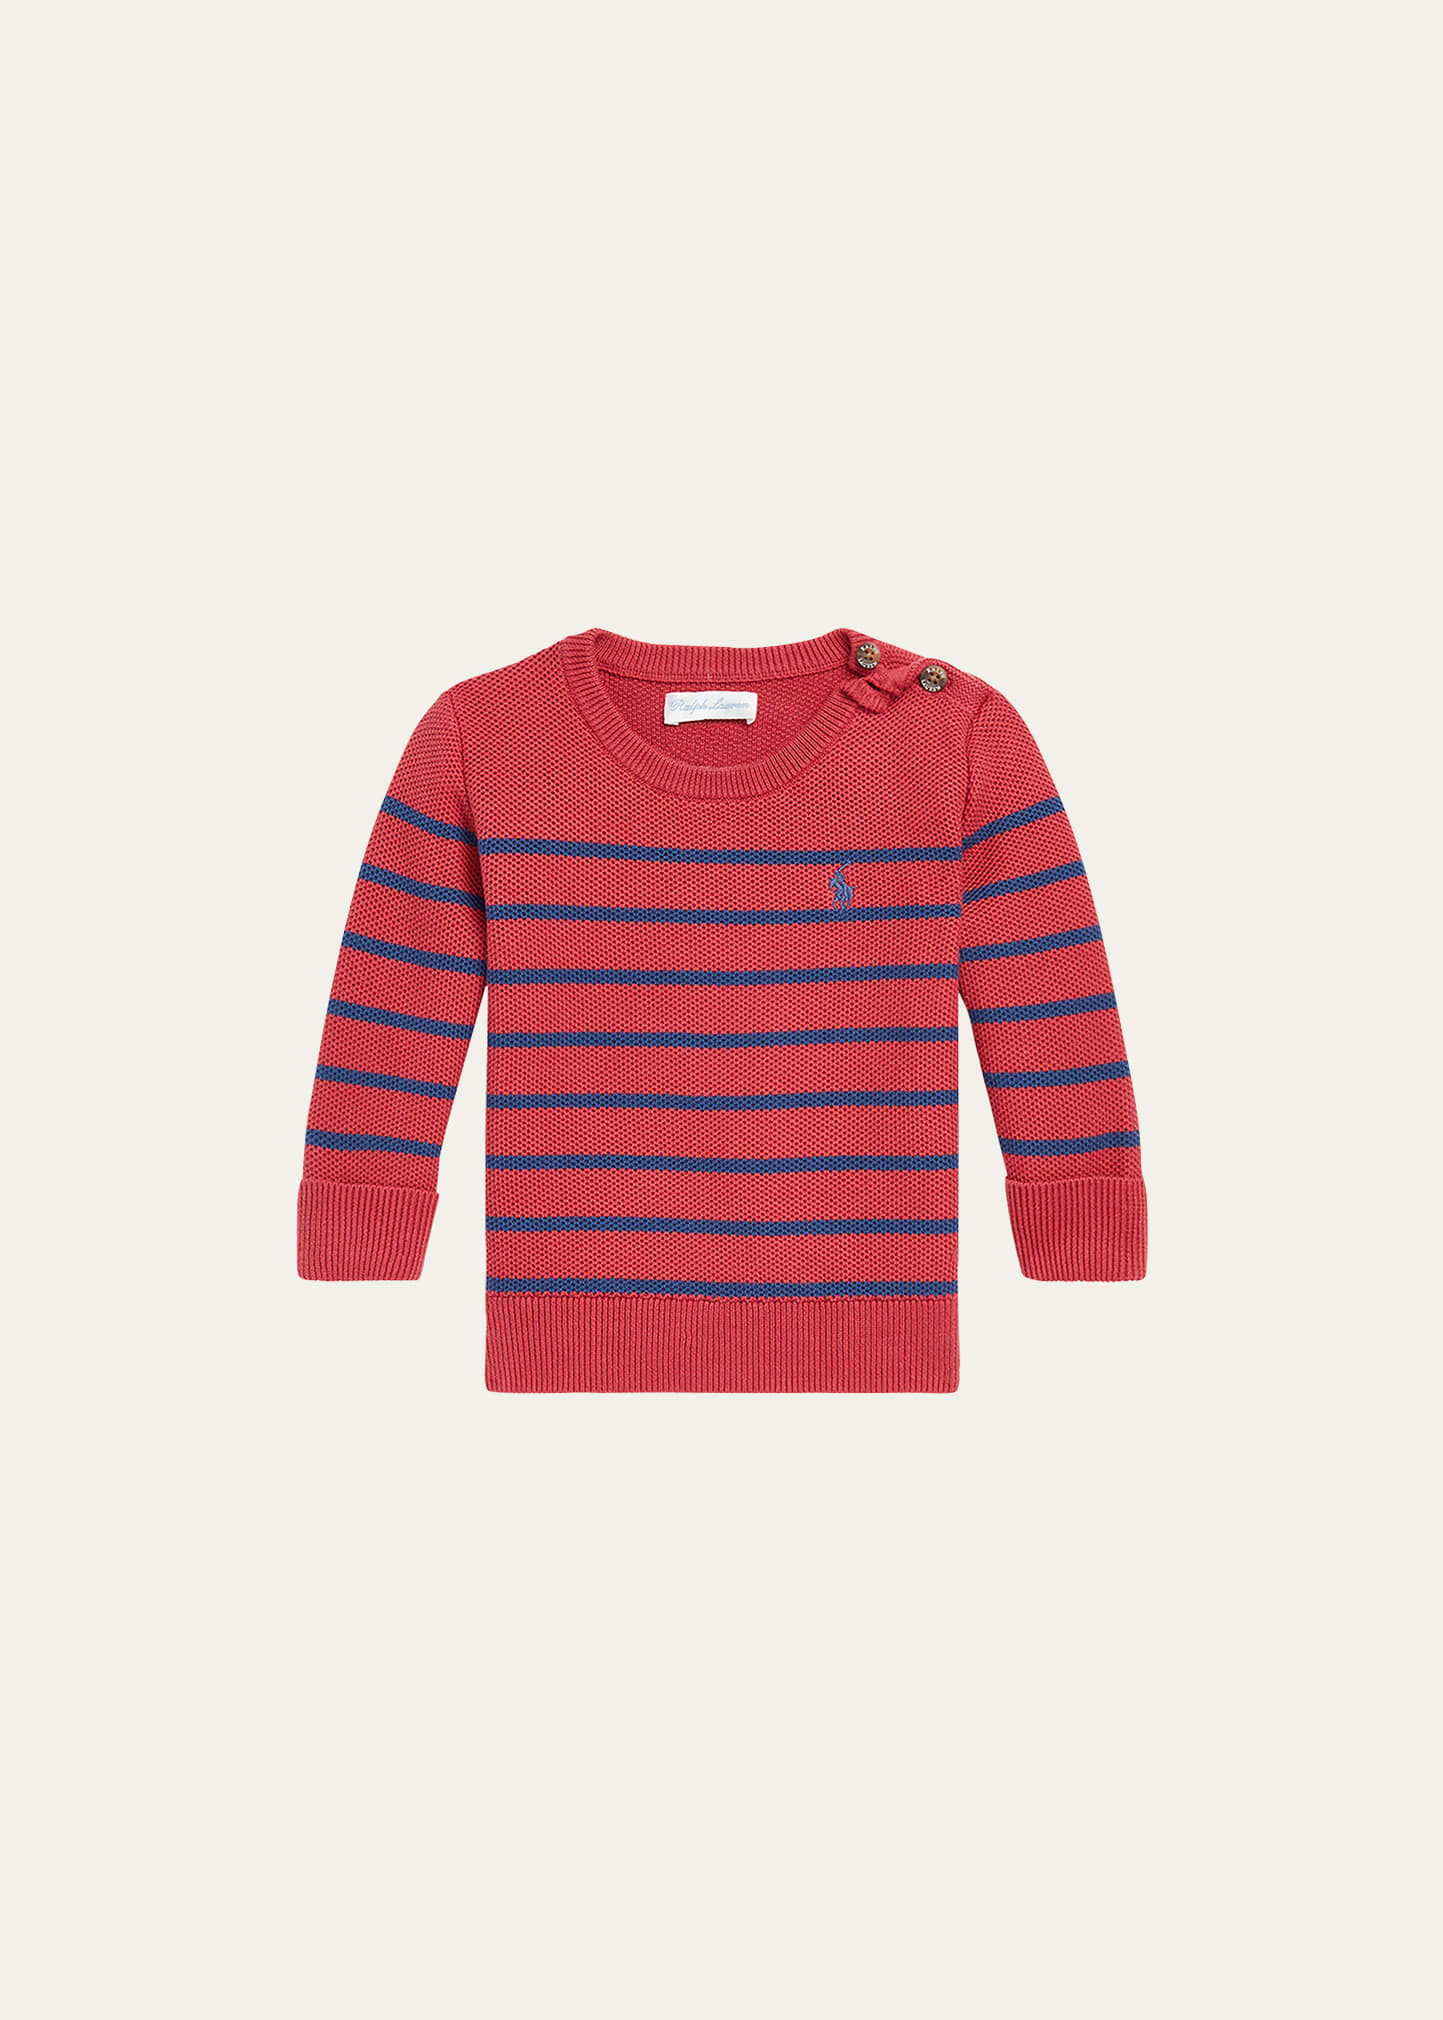 Boy's Mesh Knit Striped Sweater, Size 3M-24M